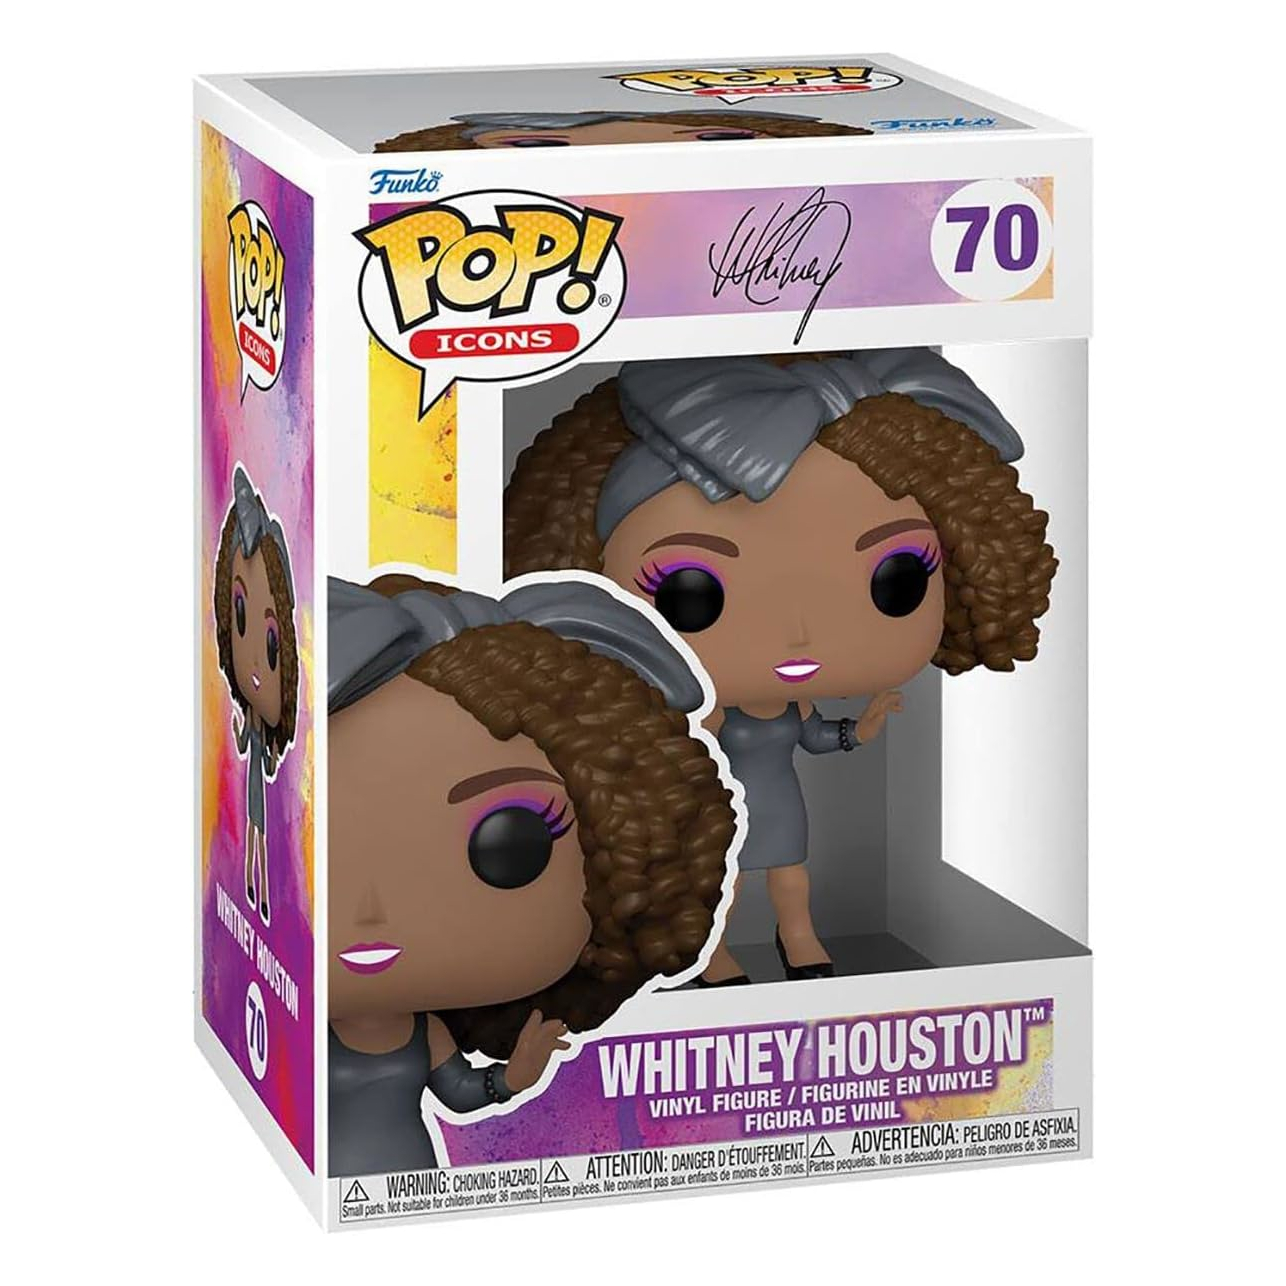 Фигурка Funko Pop! Icons Whitney Houston How Will I Know фигурка funko whitney houston how will i know 9 5 см